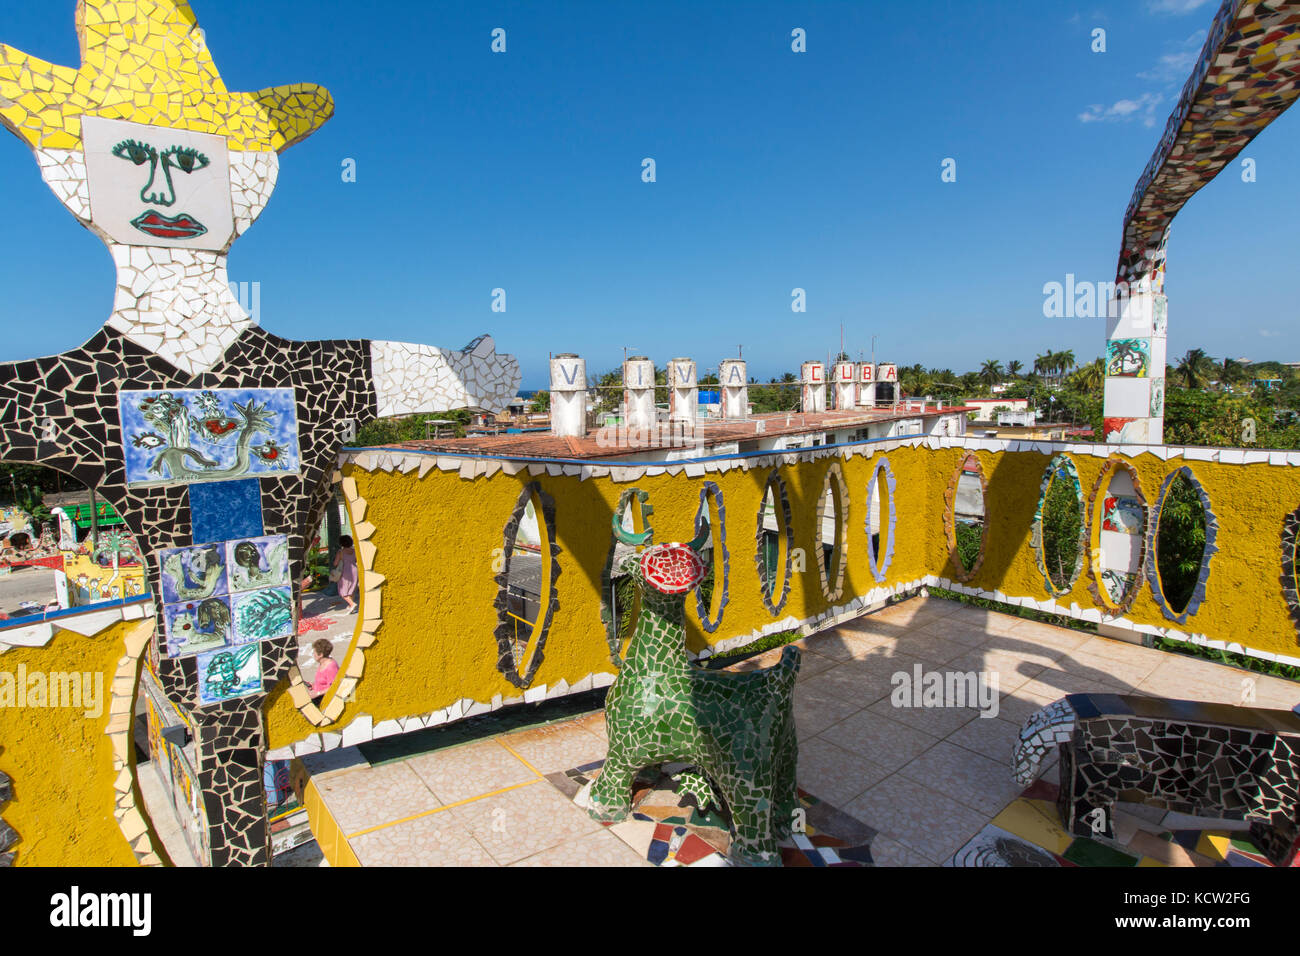 Viva Cuba, Fusterlandia, Jaimanitas, Havanna, Kuba. Eine Schaffung von Jose Fuster, ein kubanischer Künstler, Maler und Bildhauer, die das Projekt ist sein Haus und Häuser seines Nächsten zu renovieren Stockfoto